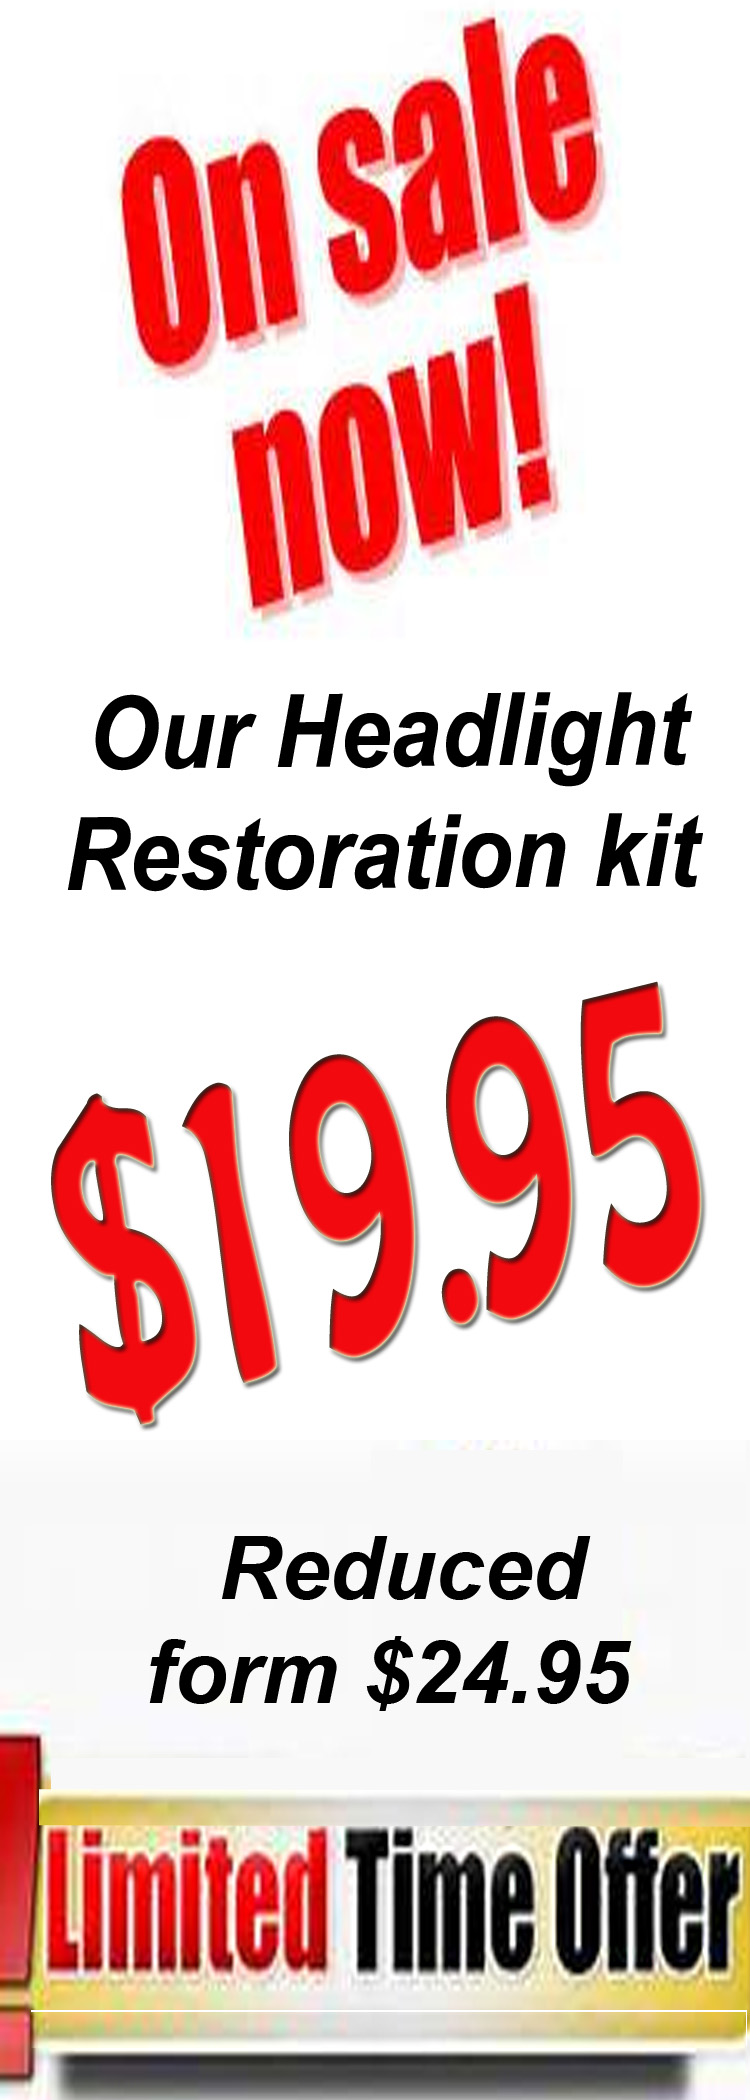 Headlight restoration kit special